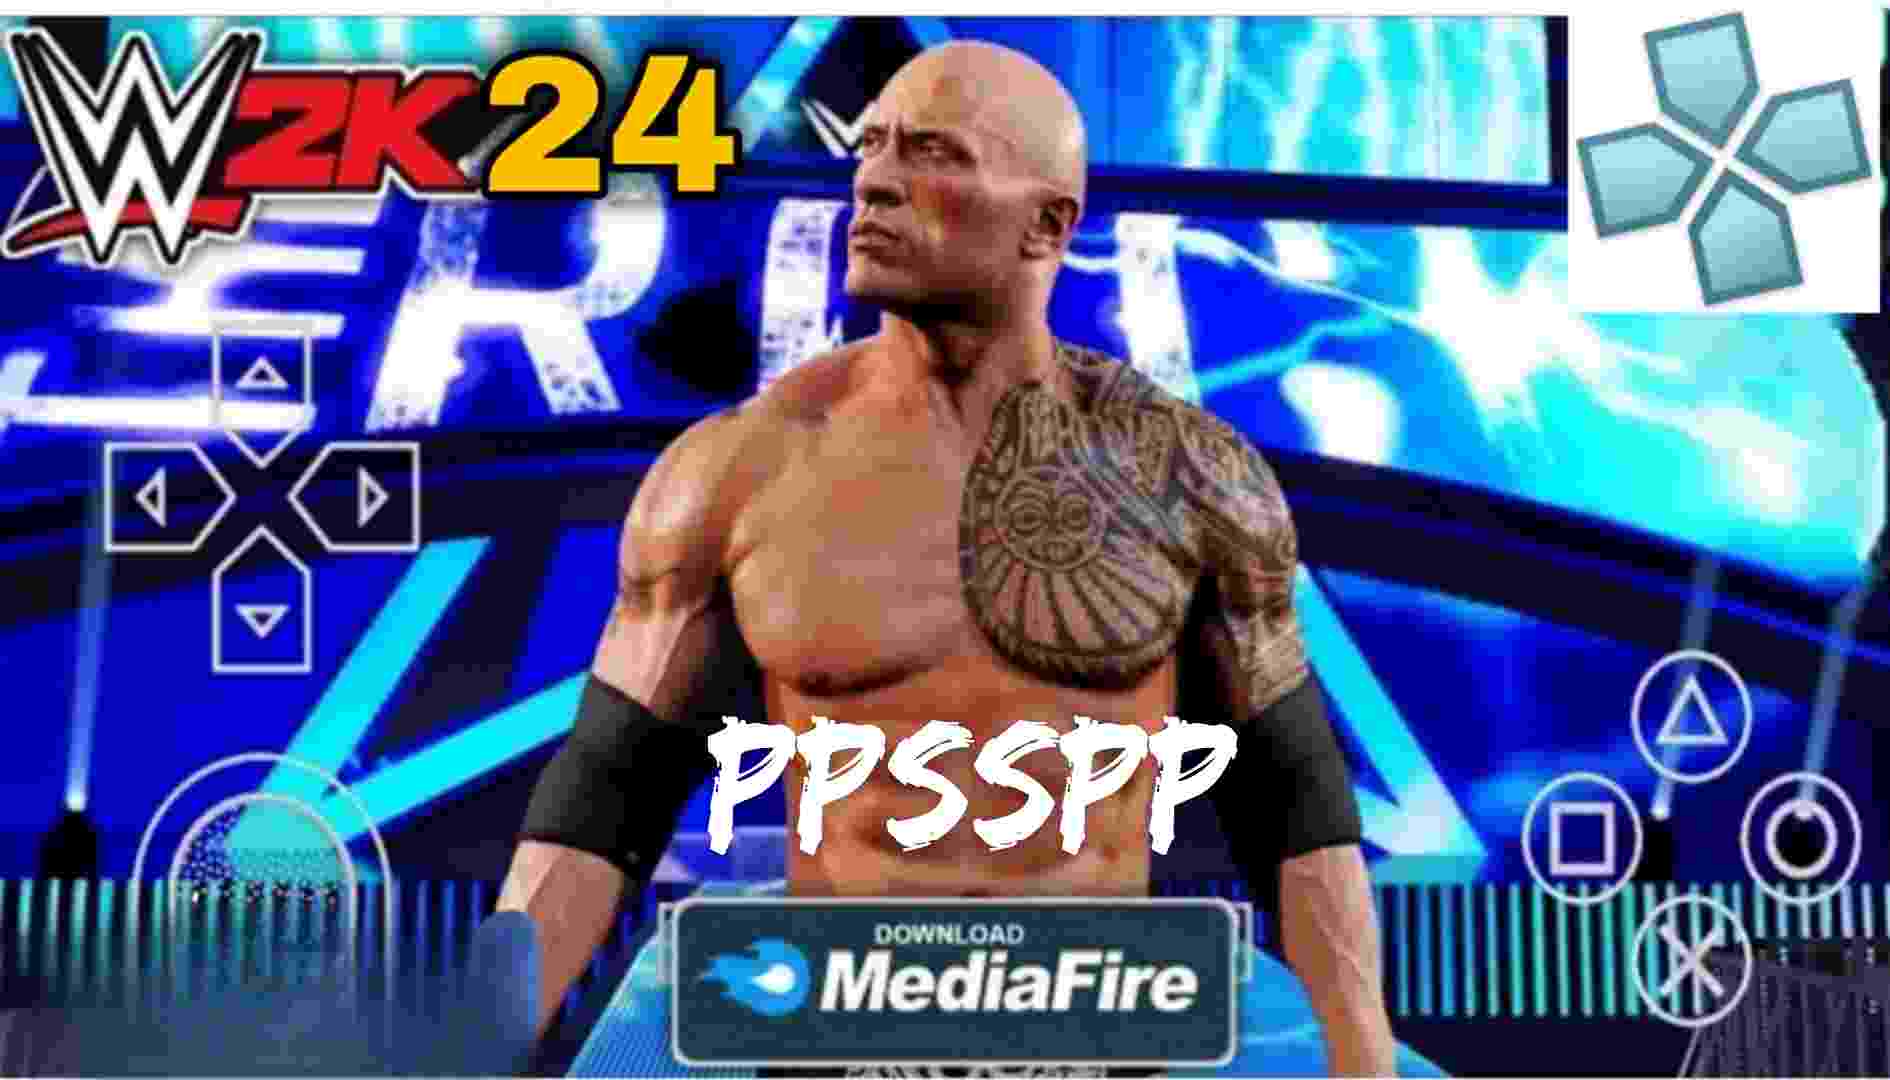 WWE 2K22 PSP MOD 600 MB BEST MOD EVER NEW ISO + PSP FOLDER 